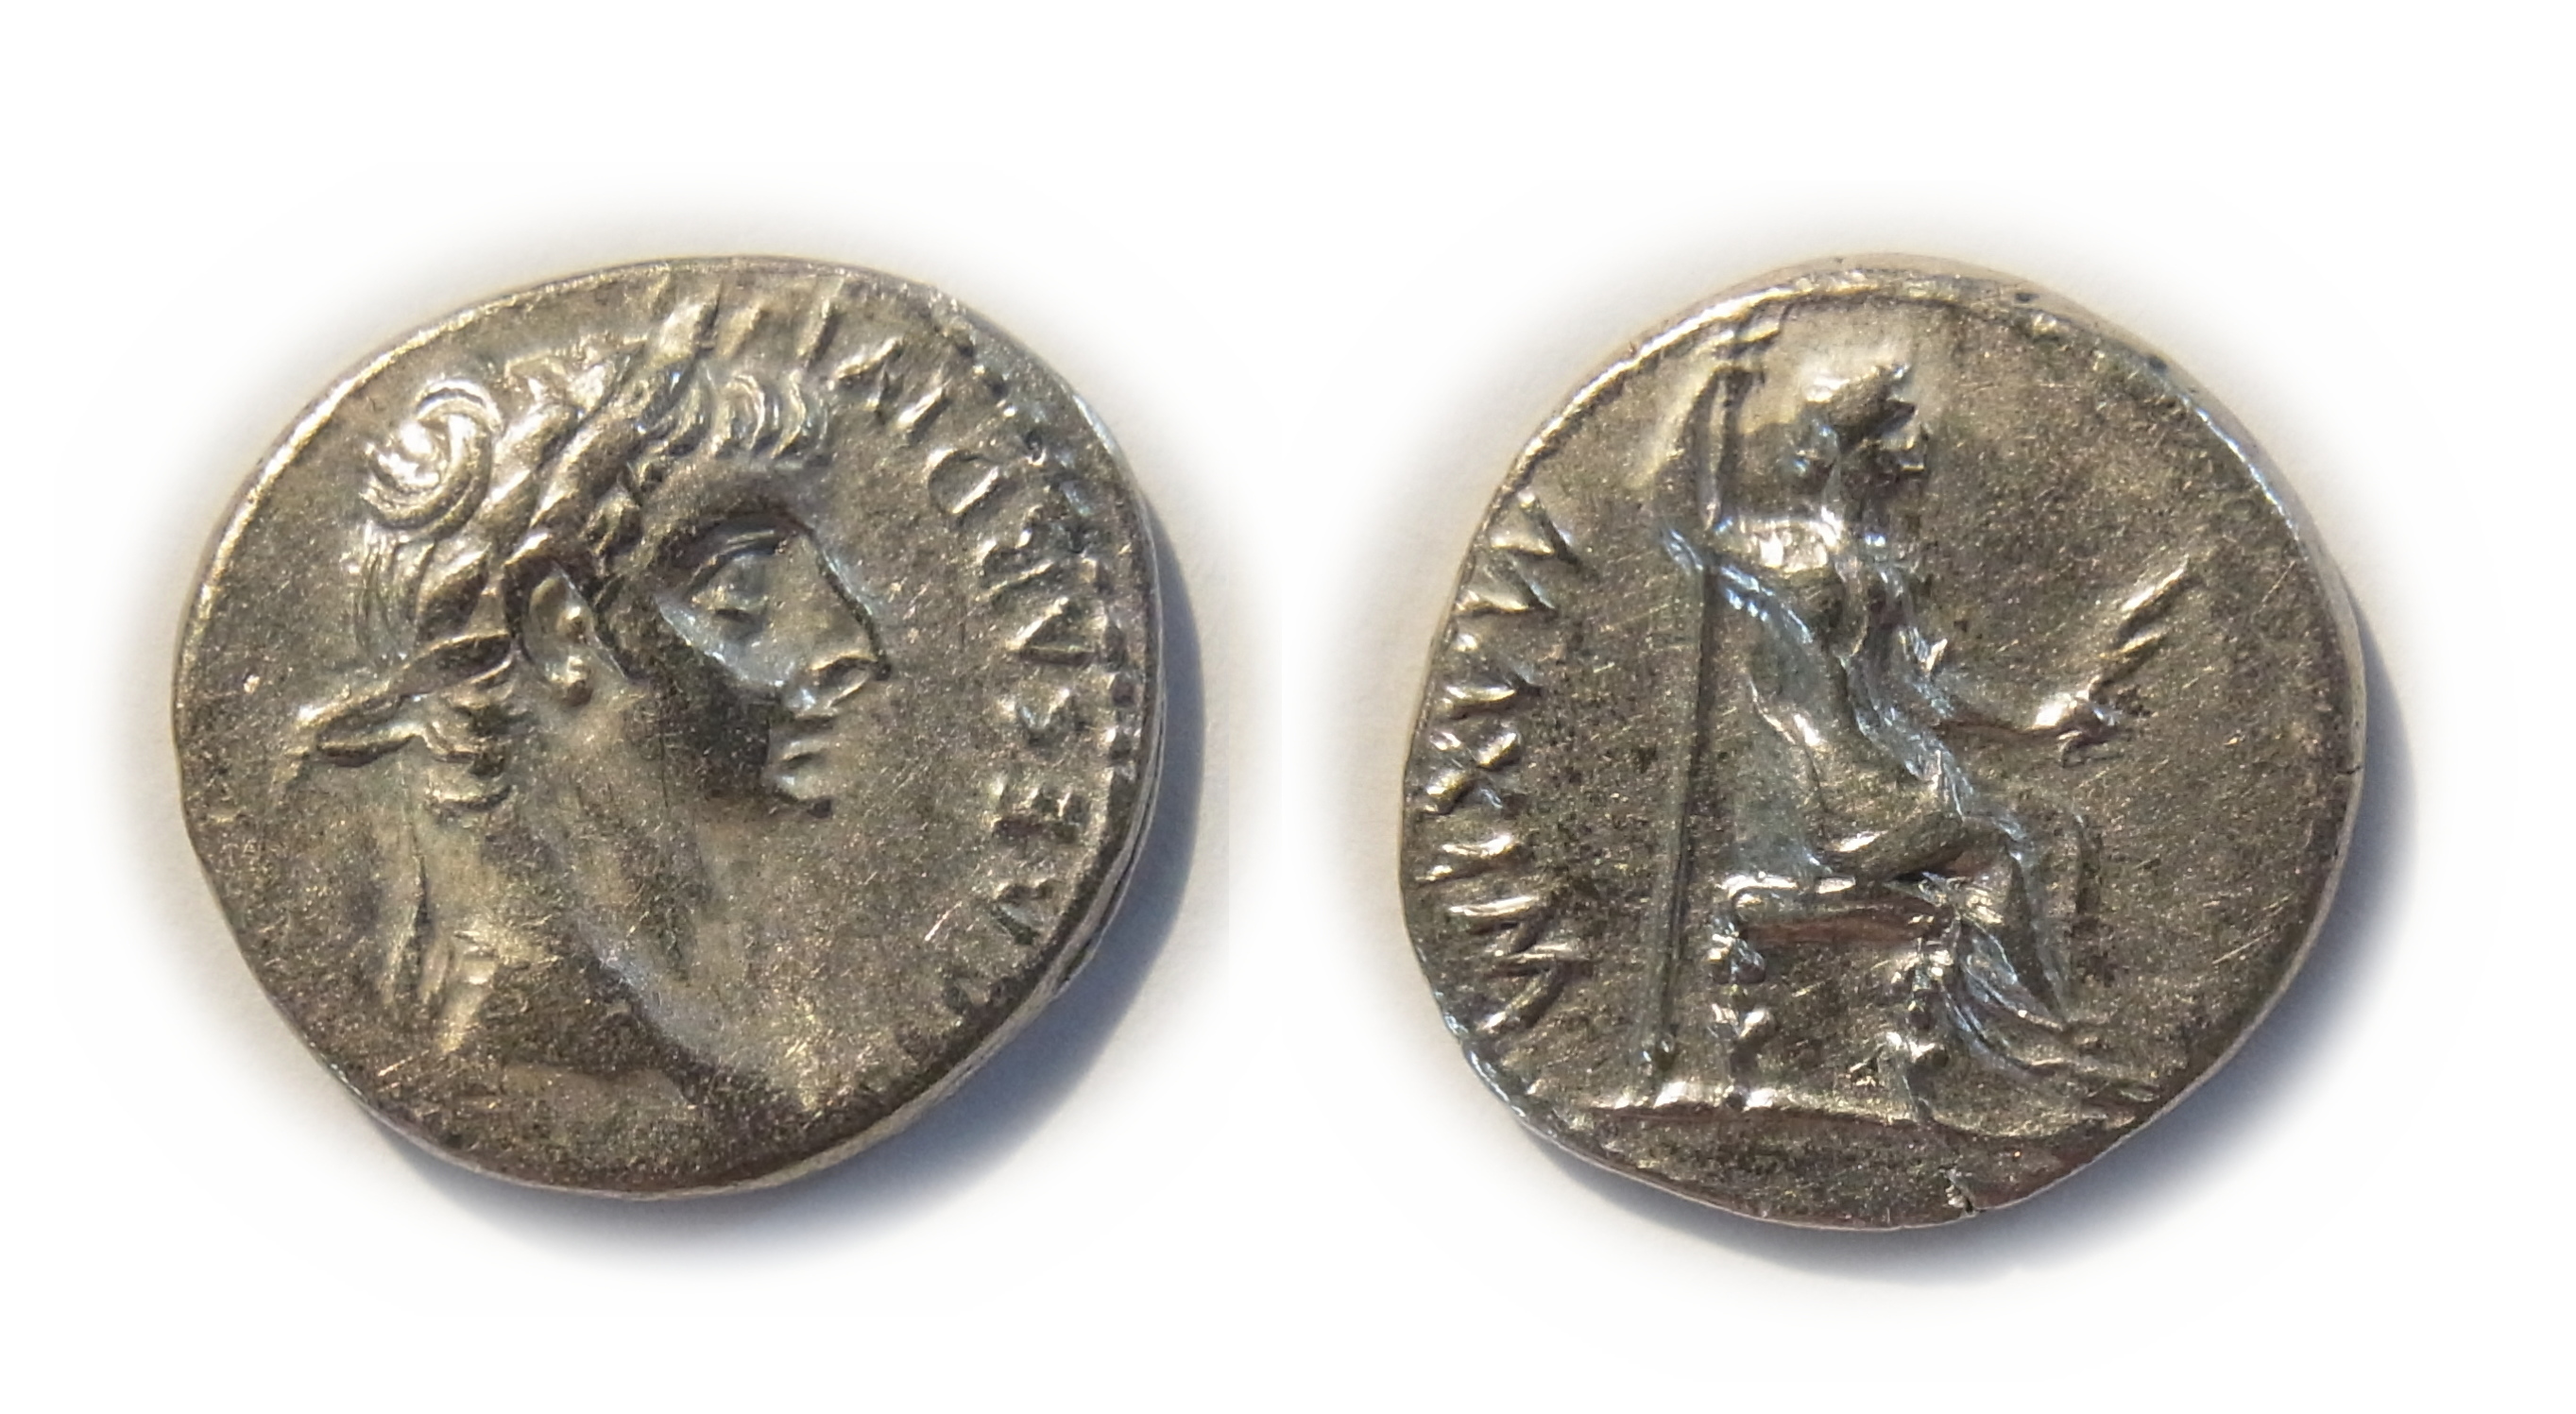 Silver coin of Roman Empire, Denarius, Tiberius Caesar Augustus, Roman emperor